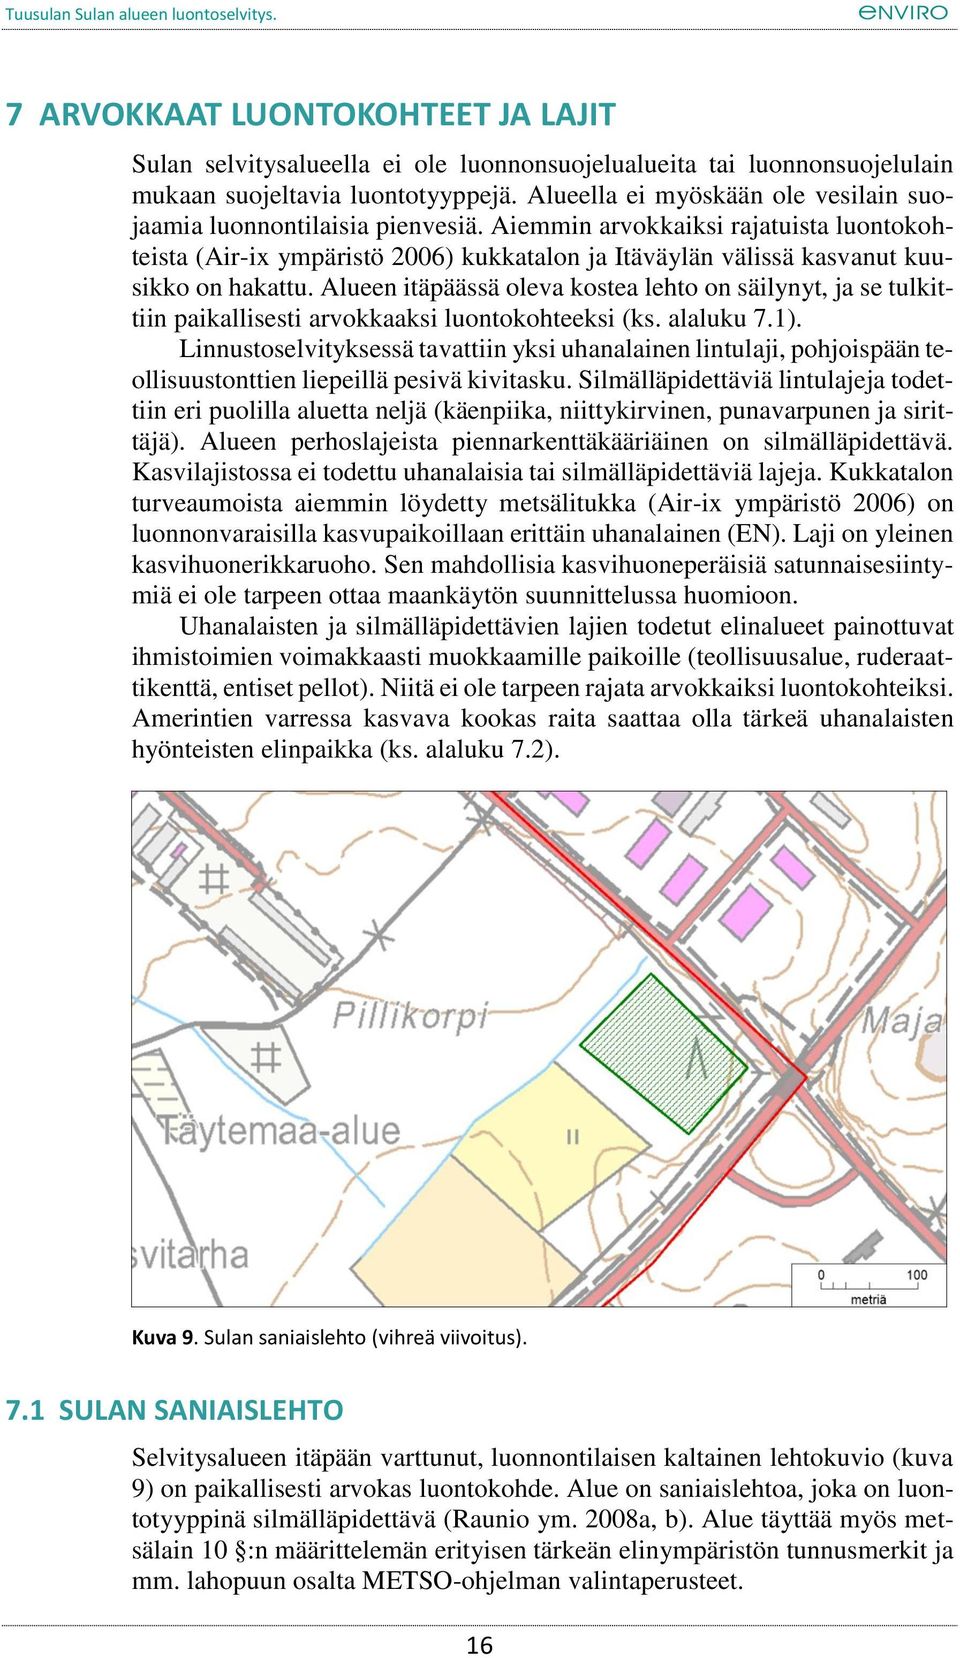 Aiemmin arvokkaiksi rajatuista luontokohteista (Air-i ympäristö 2006) kukkatalon ja Itäväylän välissä kasvanut kuusikko on hakattu.